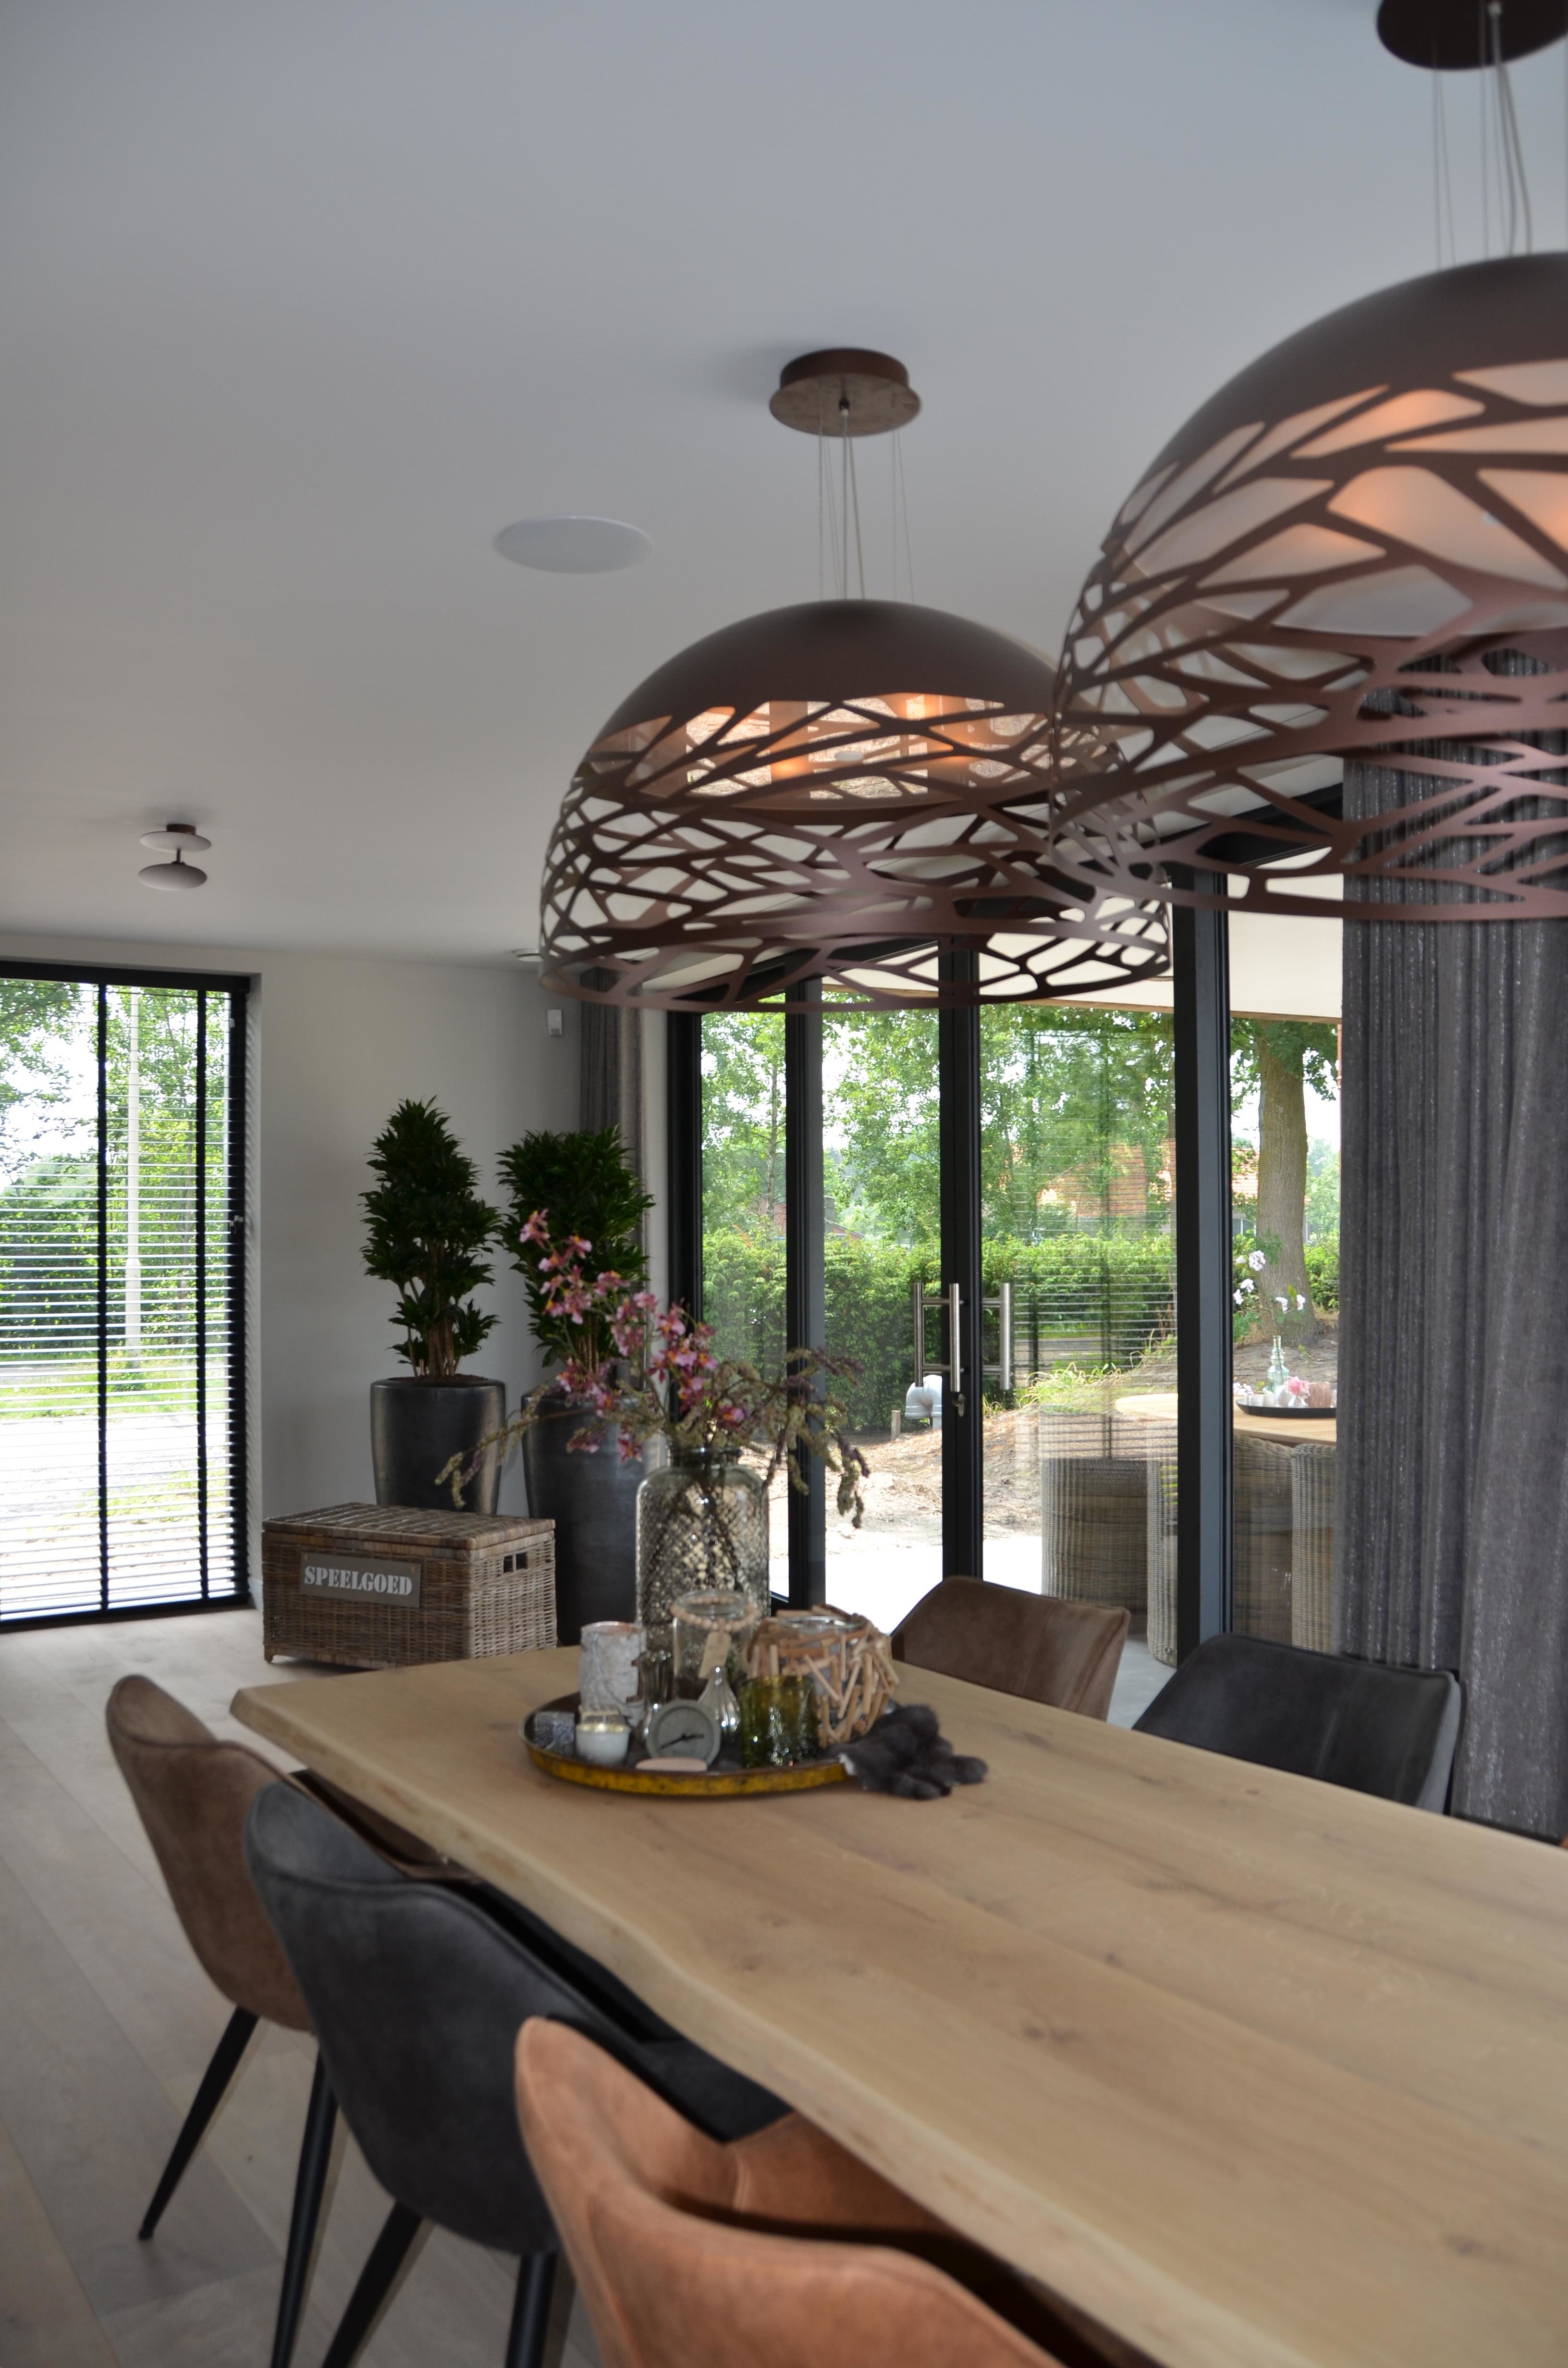 drijvers-oisterwijk-villa-riet-hout-interieur-verlichting-eetkamer-eettafel (11) - Drijvers Oisterwijk B.V.